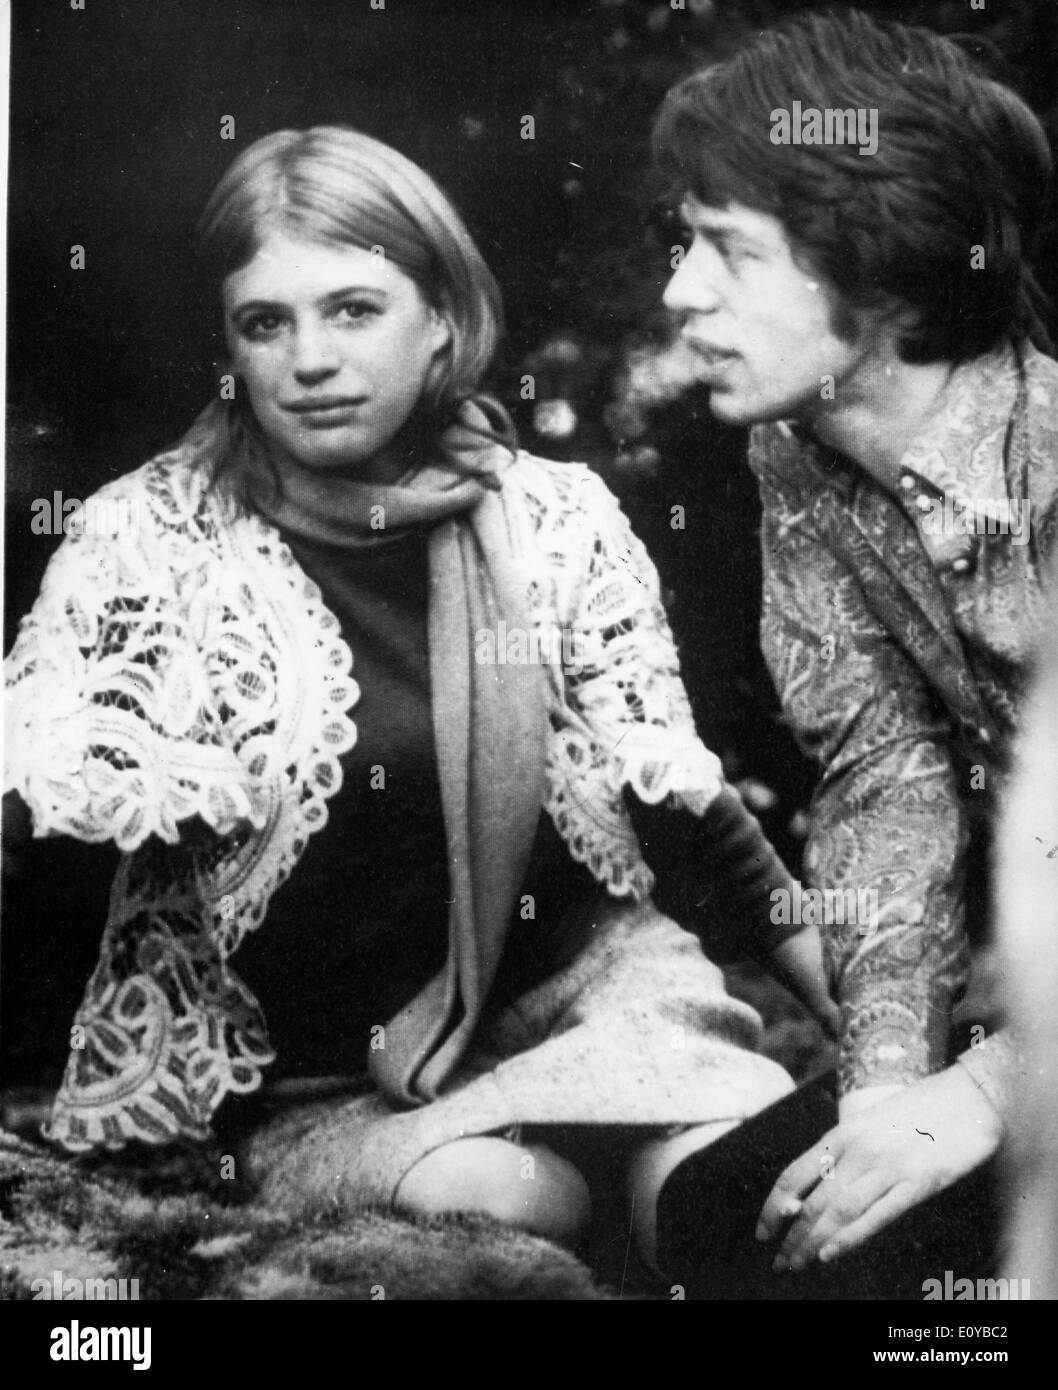 Il cantante Mick Jagger visite Marianne fidato in ospedale Foto Stock